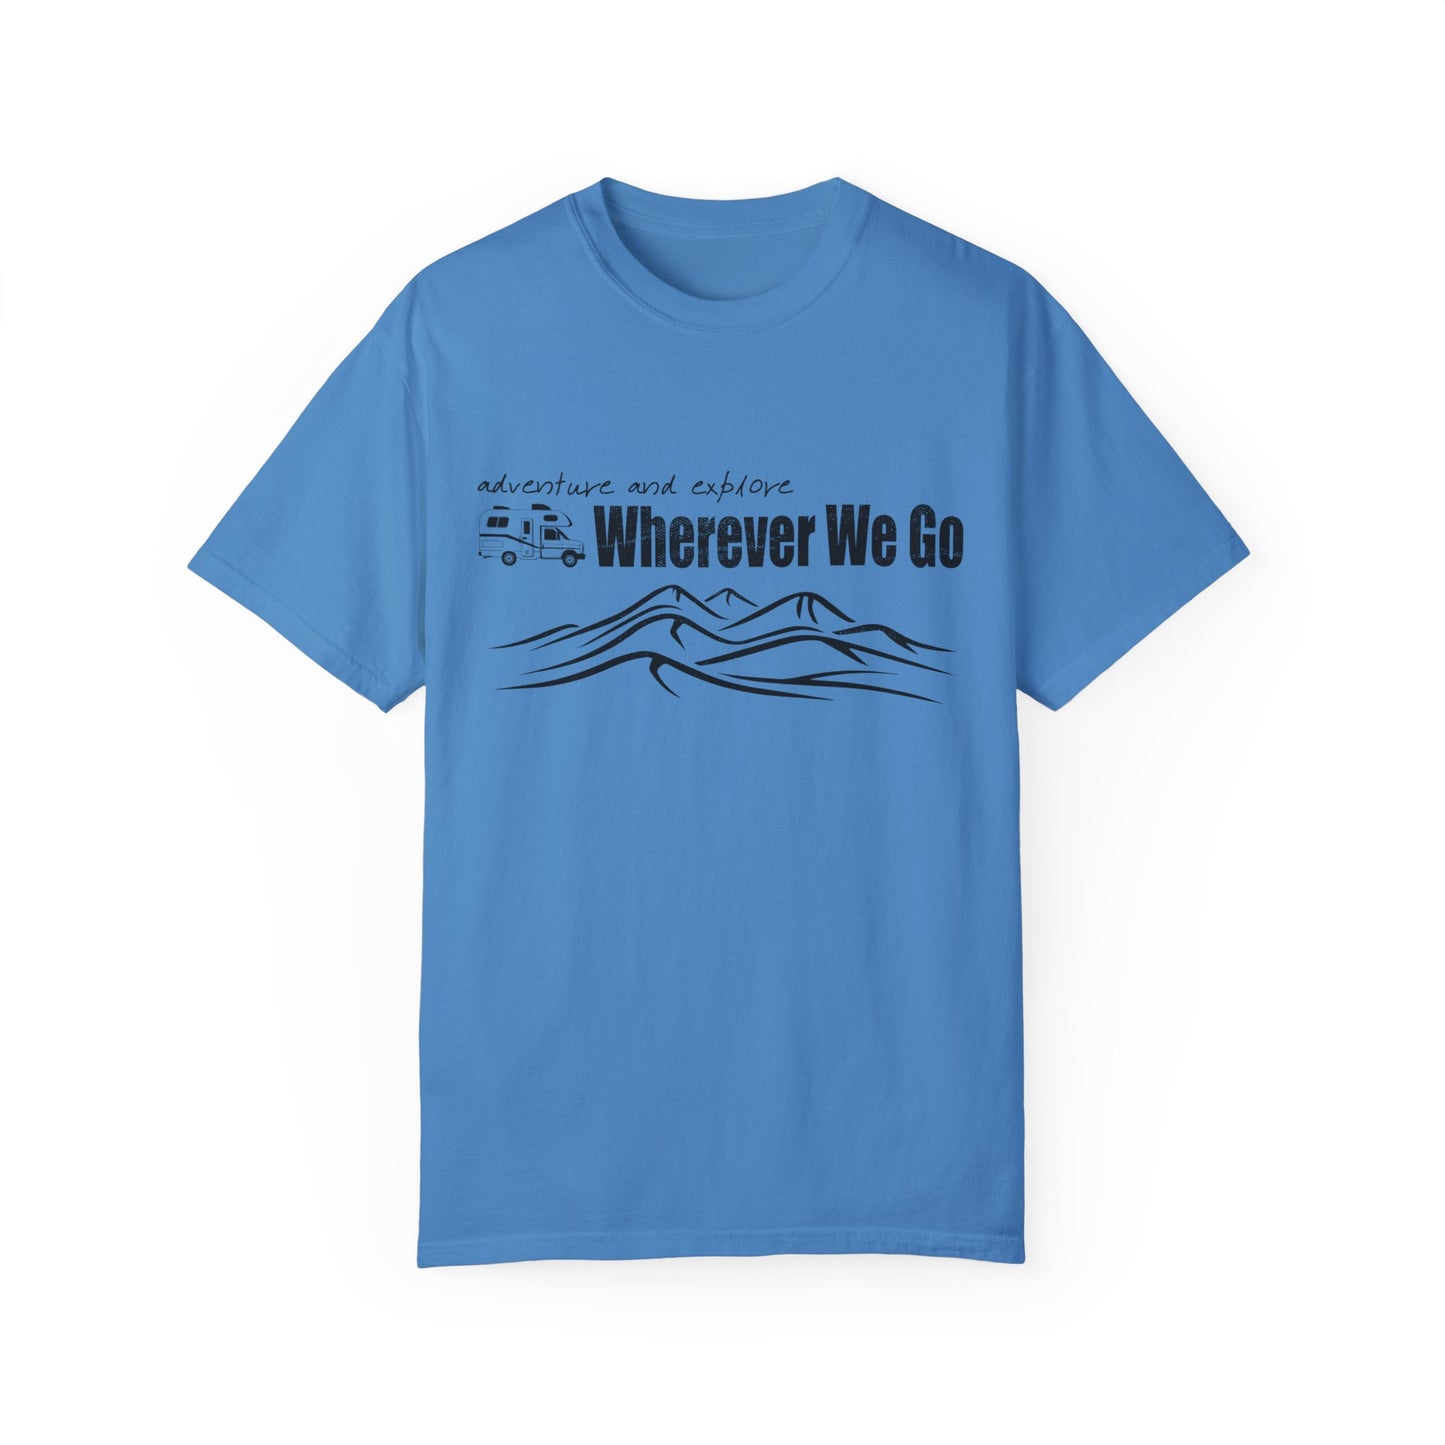 Adventure Shirt, Exploration Shirt, Summer Camp Shirt, RV Road Trip Shirt, Hiker Shirt, Mountain Shirt, Family Trip Shirt, Vacation Shirt